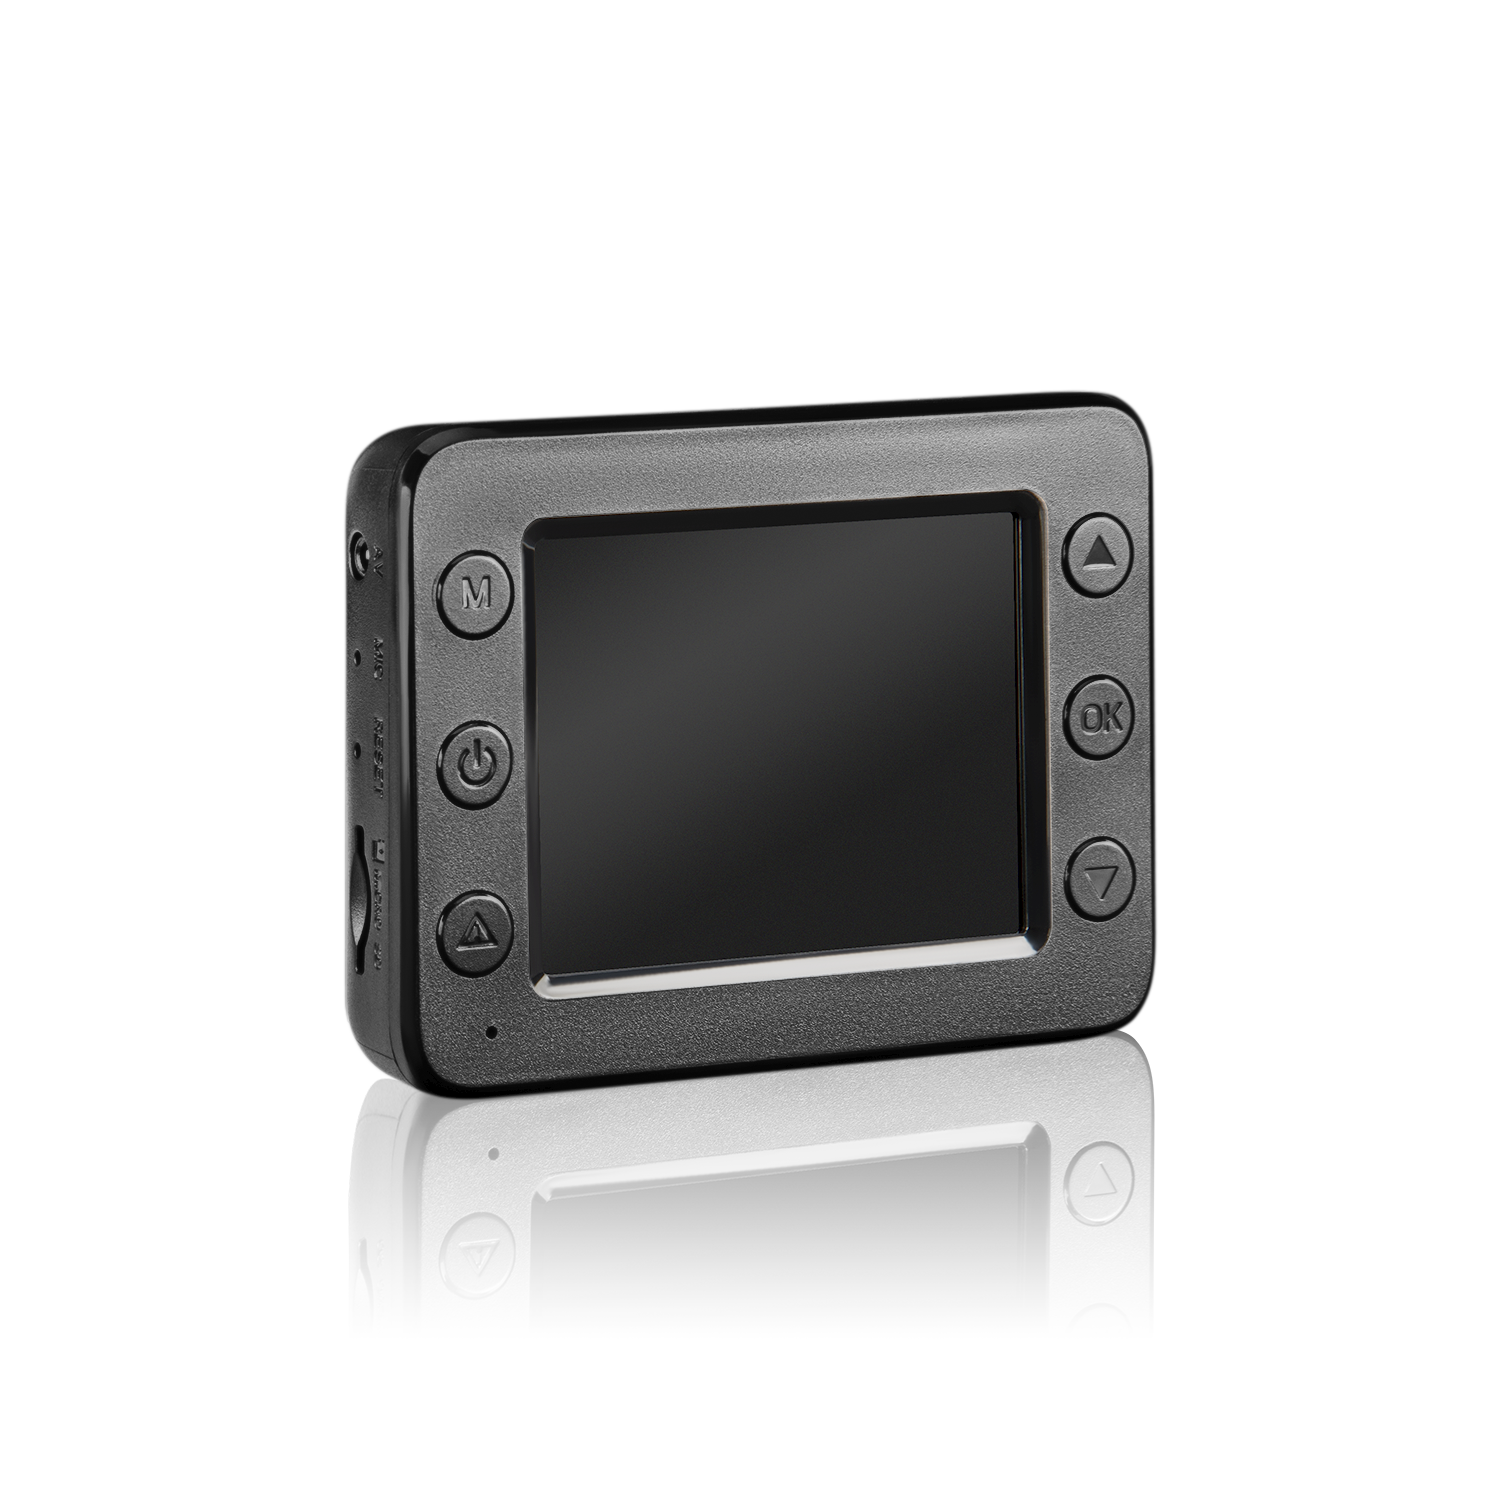 Обзор двухканального видеорегистратора Dunobil Honor Duo Magnet с магнитным креплением и разрешением Full HD